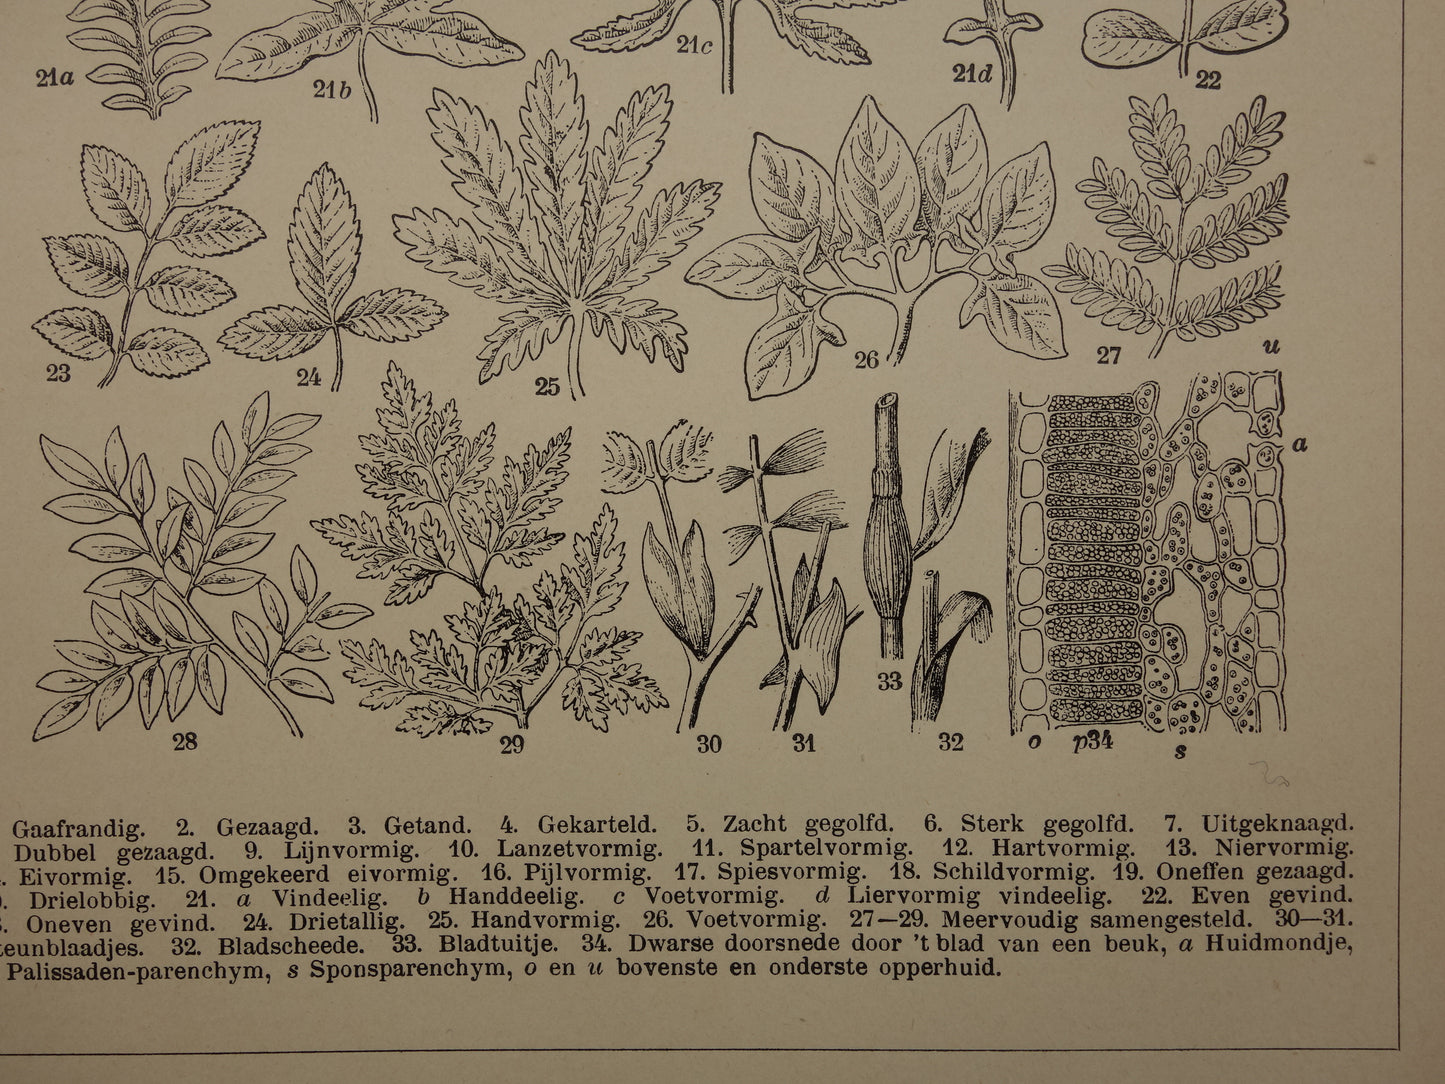 BLADEREN oude botanische prent uit het jaar 1906 originele antieke Blad Bloemblad Bladvormen illustratie print